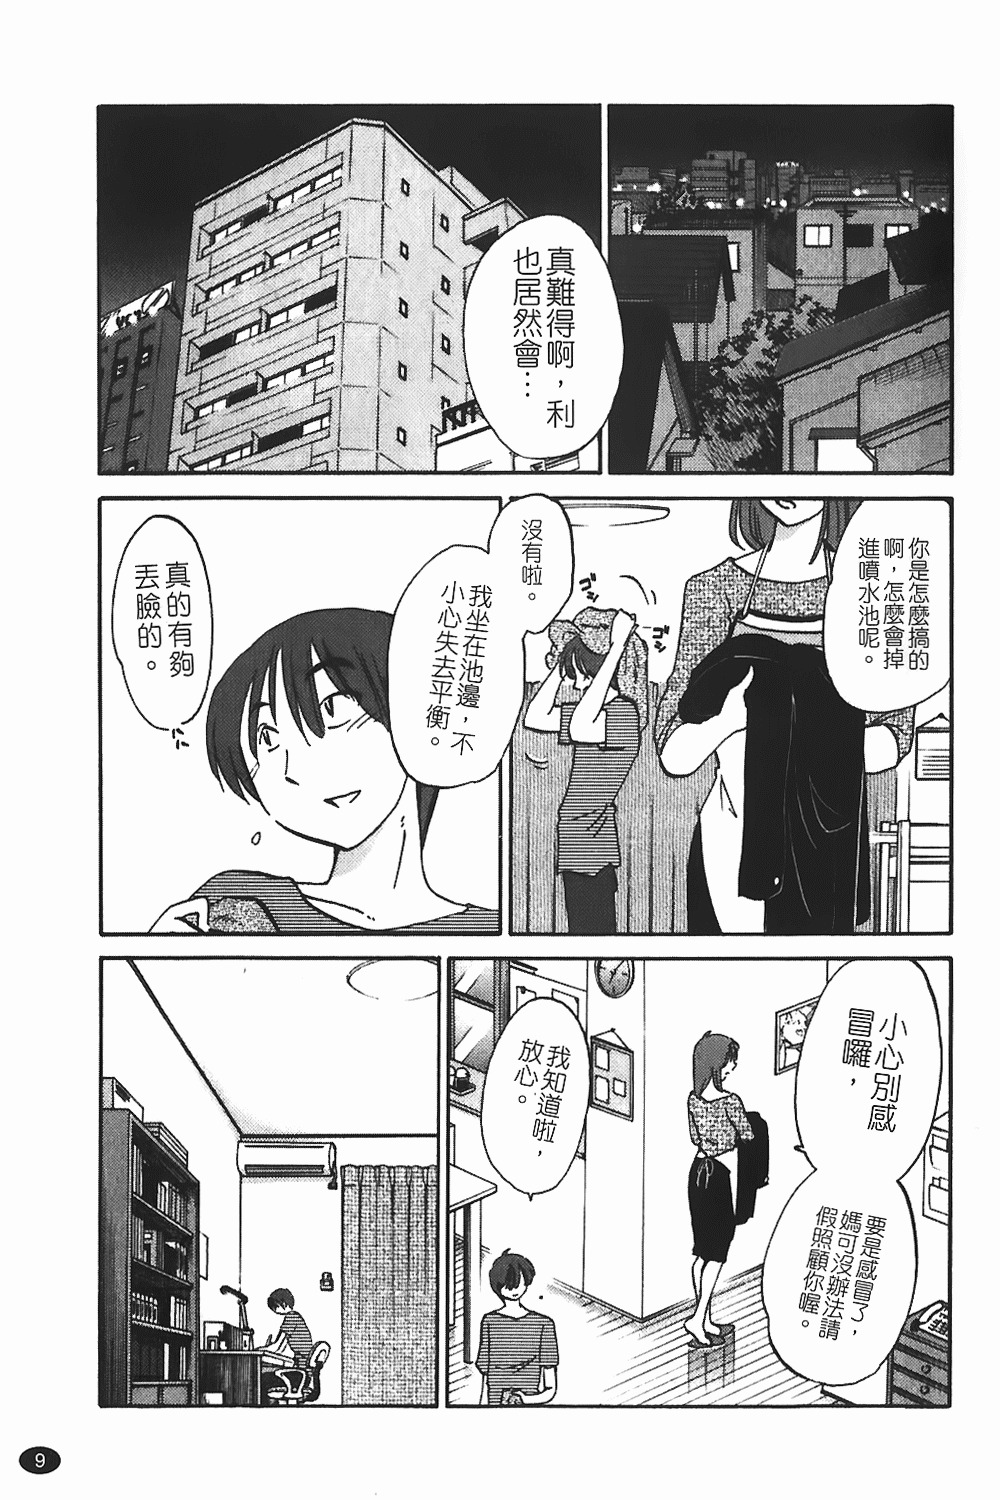 [TsuyaTsuya] Monokage no Iris 1 | 陰影中的伊利斯 1 [Chinese] page 6 full